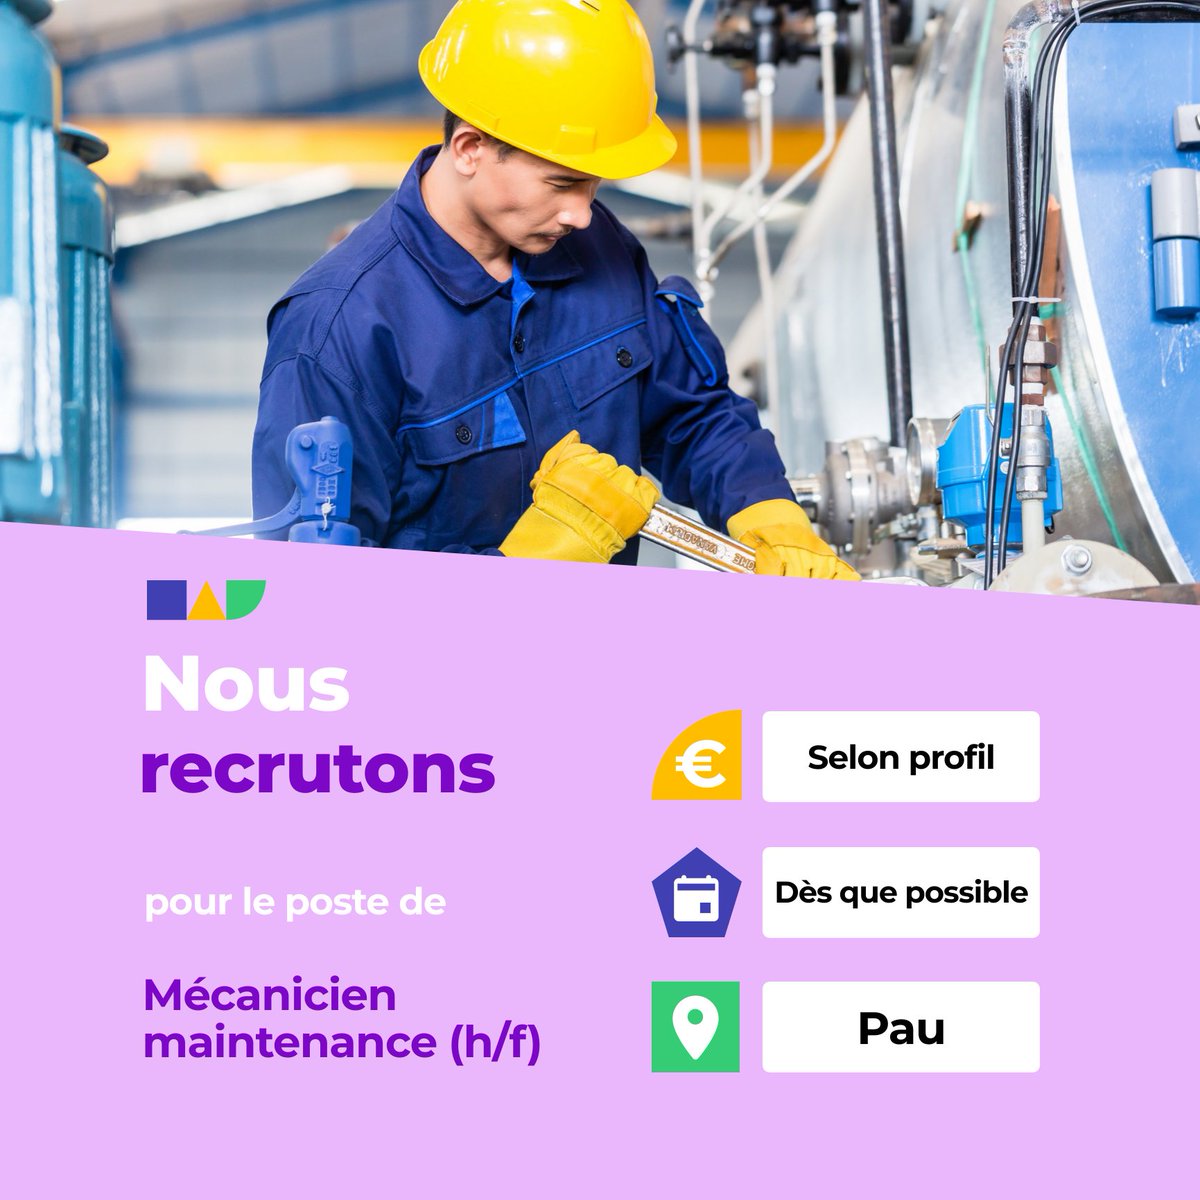 🛎️ Nouvelle offre d'emploi : Mécanicien maintenance (h/f)
🌎 Pau (64000)
📅 Démarrage dans les 7 prochains jours
👉 Plus d'infos : jobs.iziwork.com/fr/offre-emplo…
#recrutement #intérim #emploi #OffreEmploi #job #iziwork